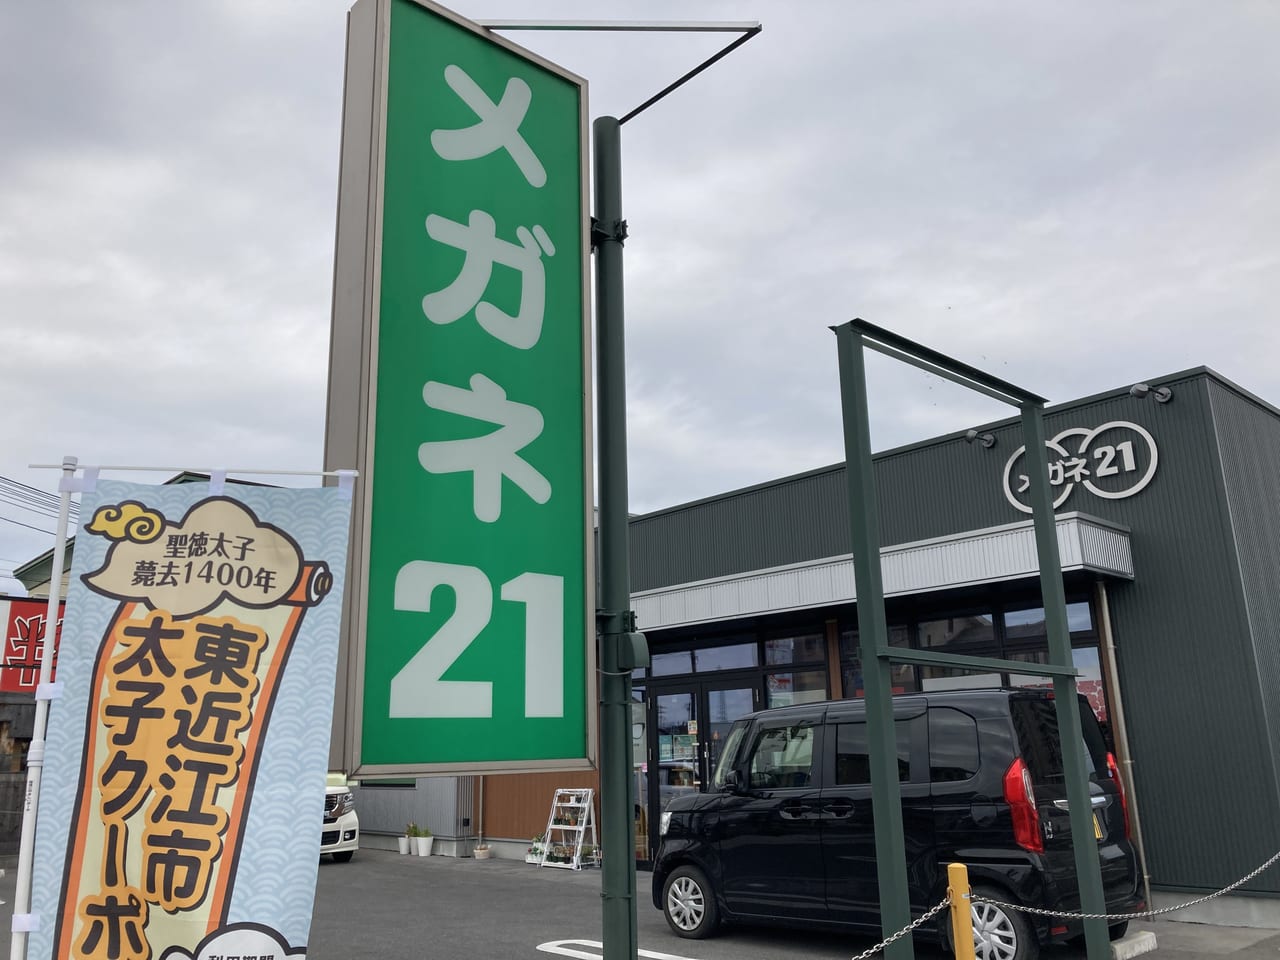 「東近江市太子クーポン券」取り扱い店2